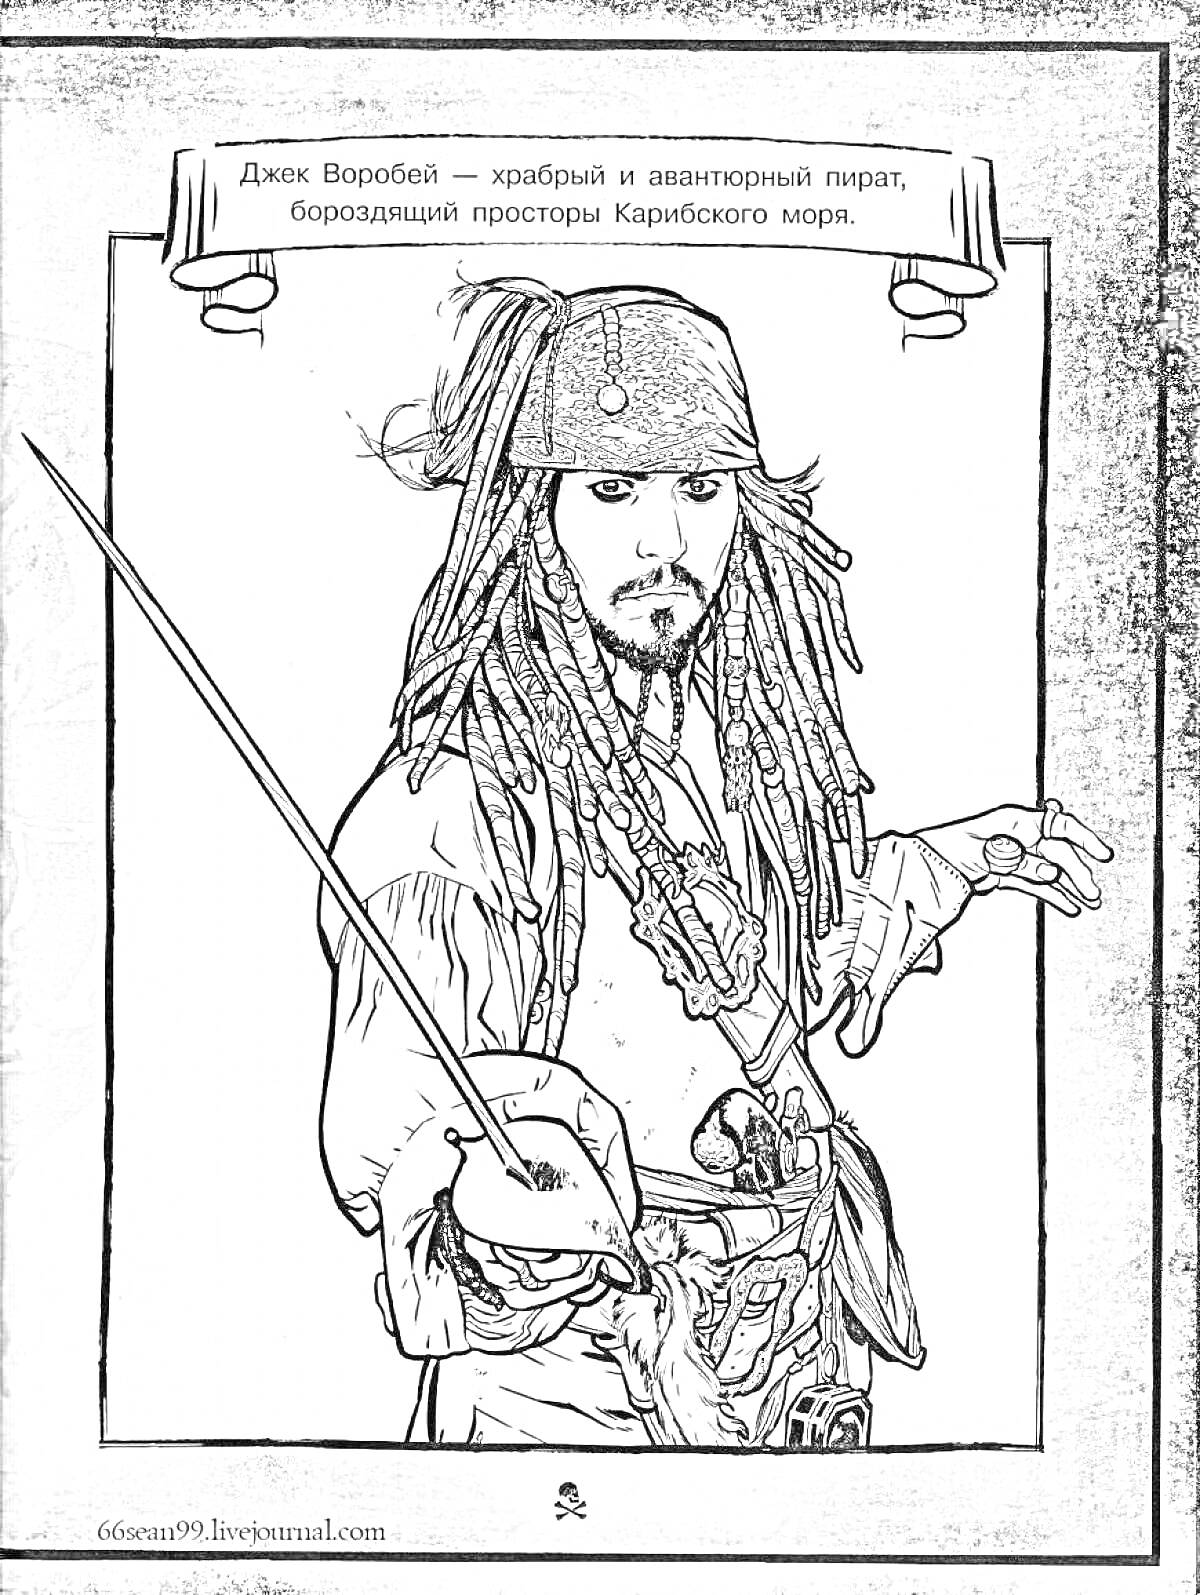 Джек Воробей с мечом, пират с дредами, текст о храбром и авантюрном пирате